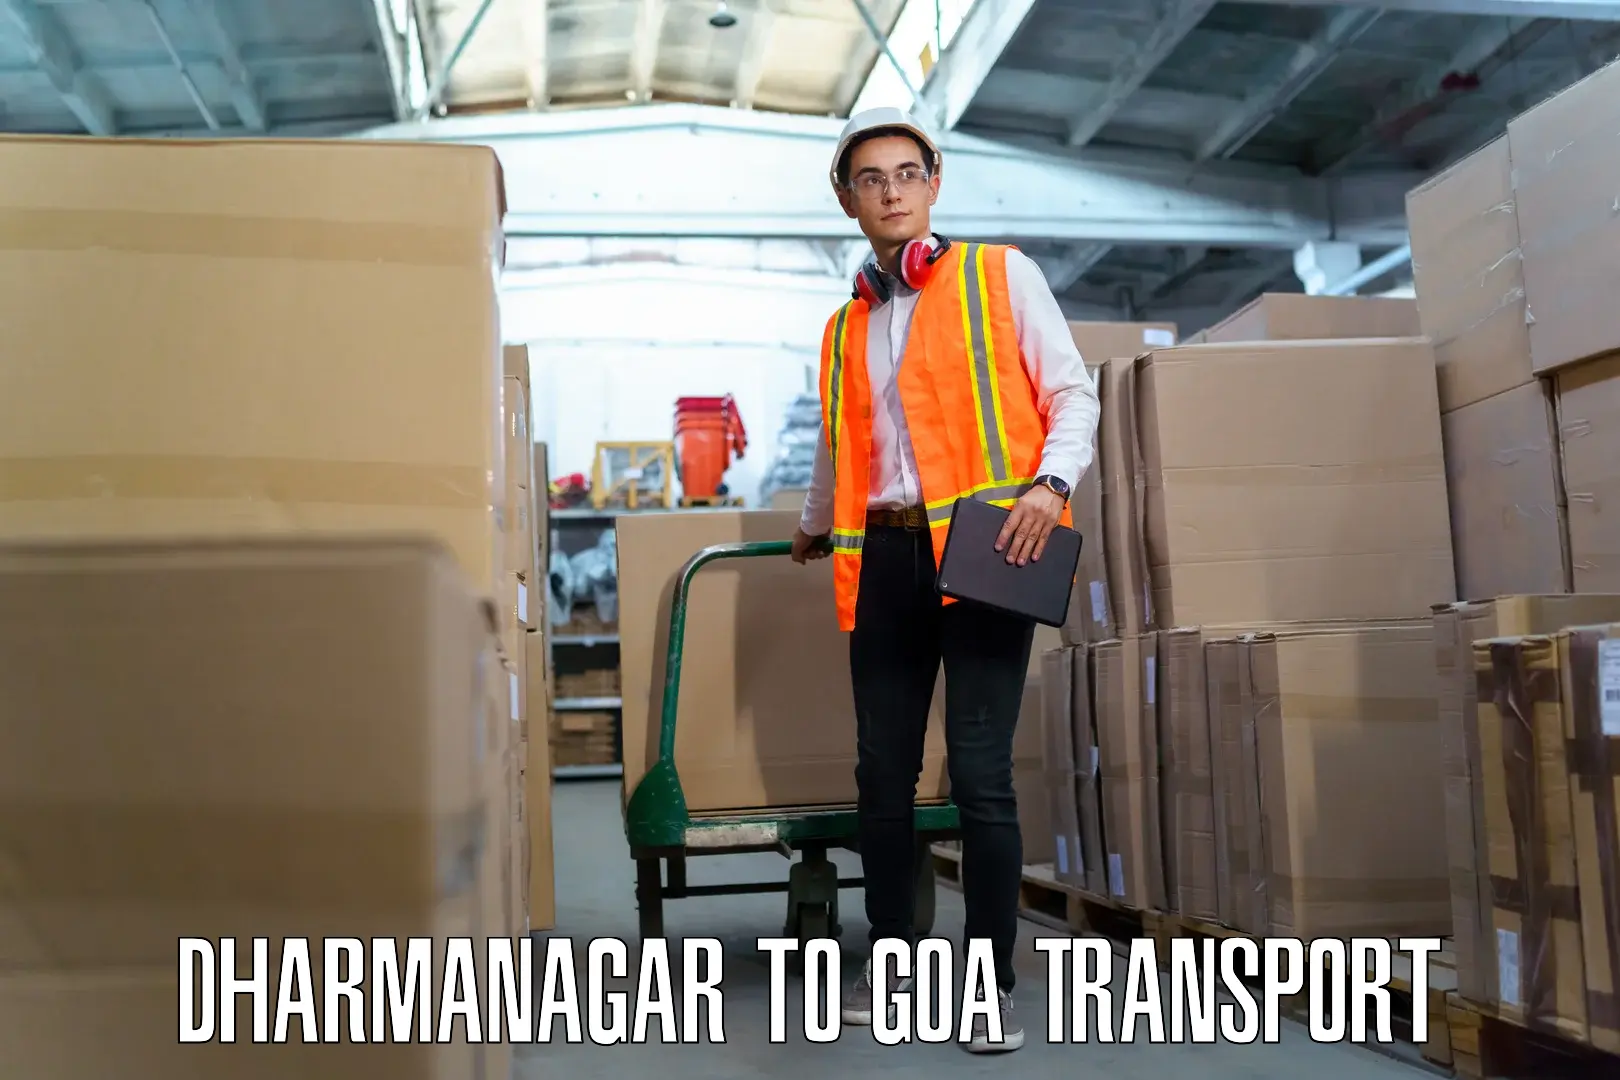 Daily transport service Dharmanagar to Canacona